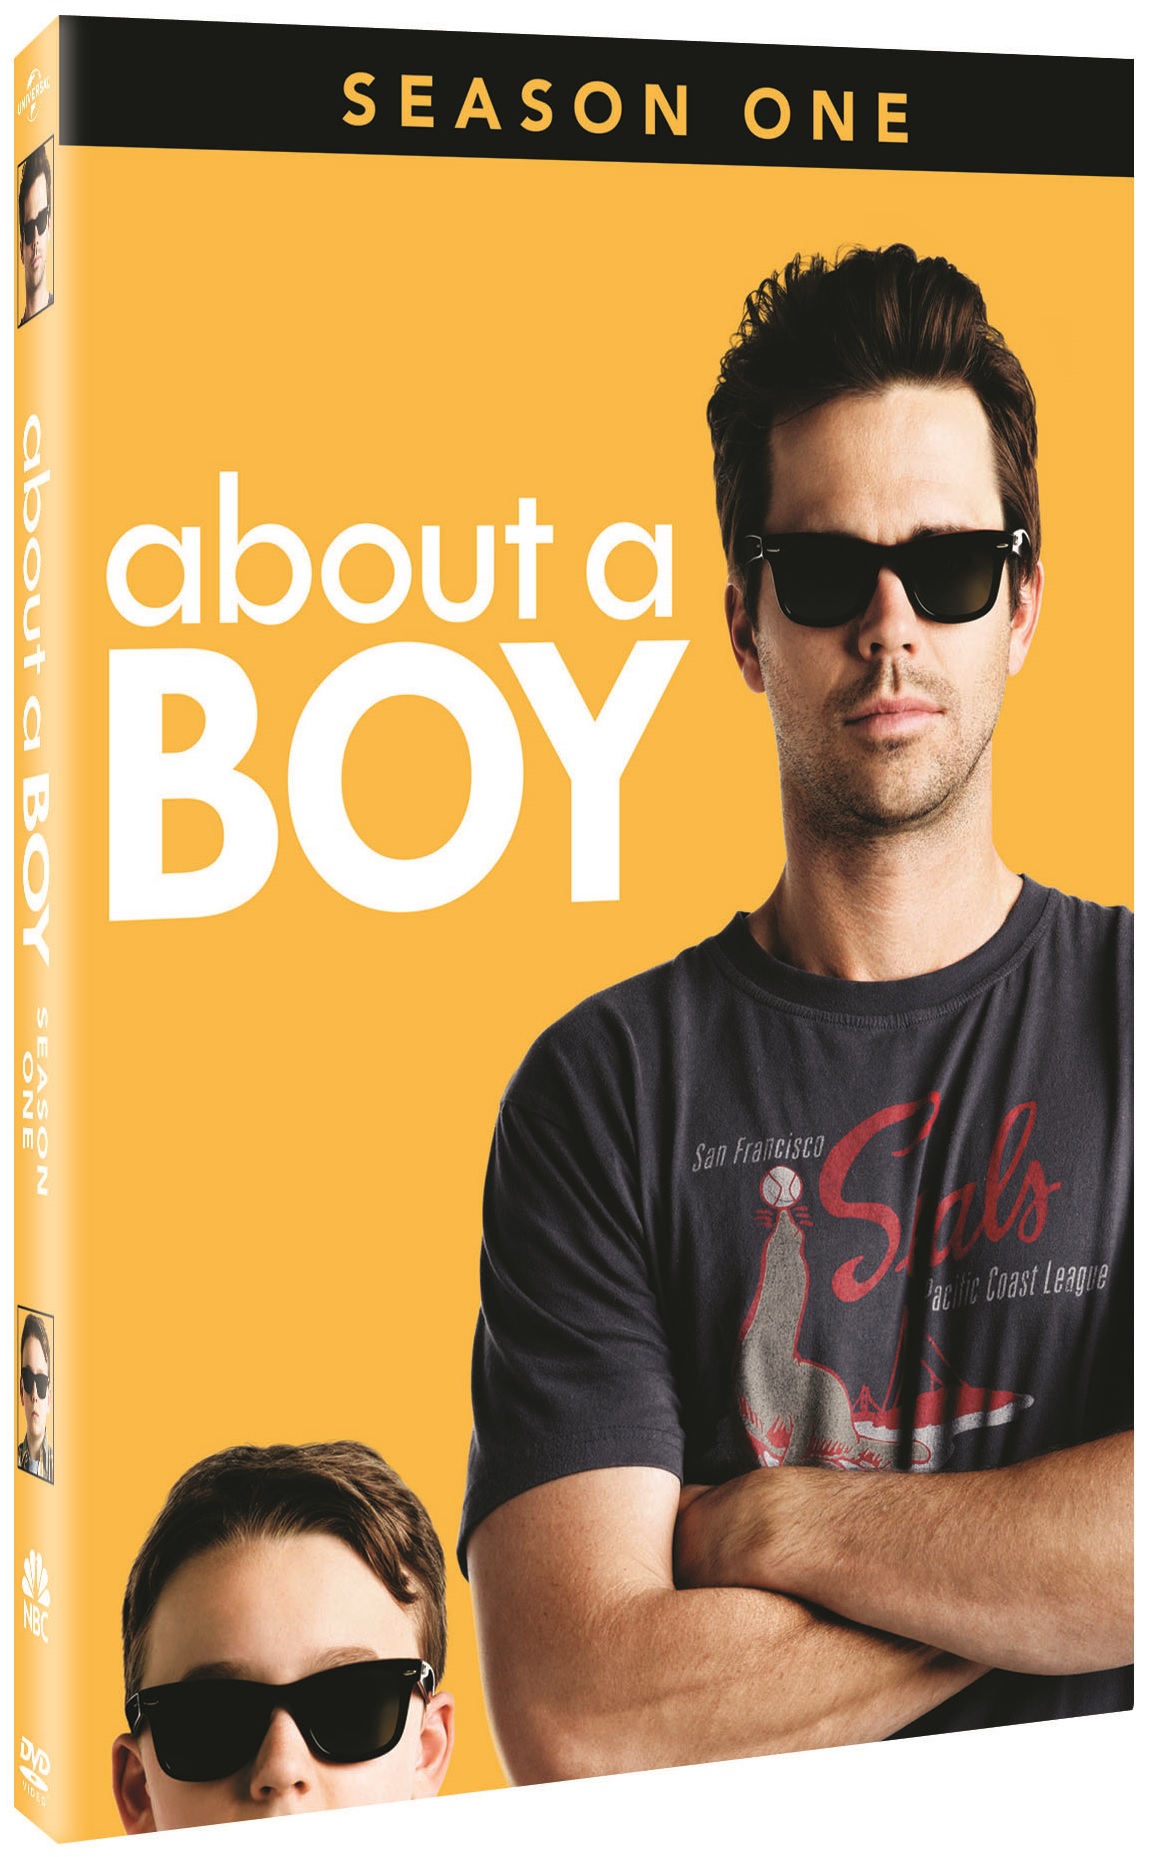 About a Boy Season 1 DVD Review